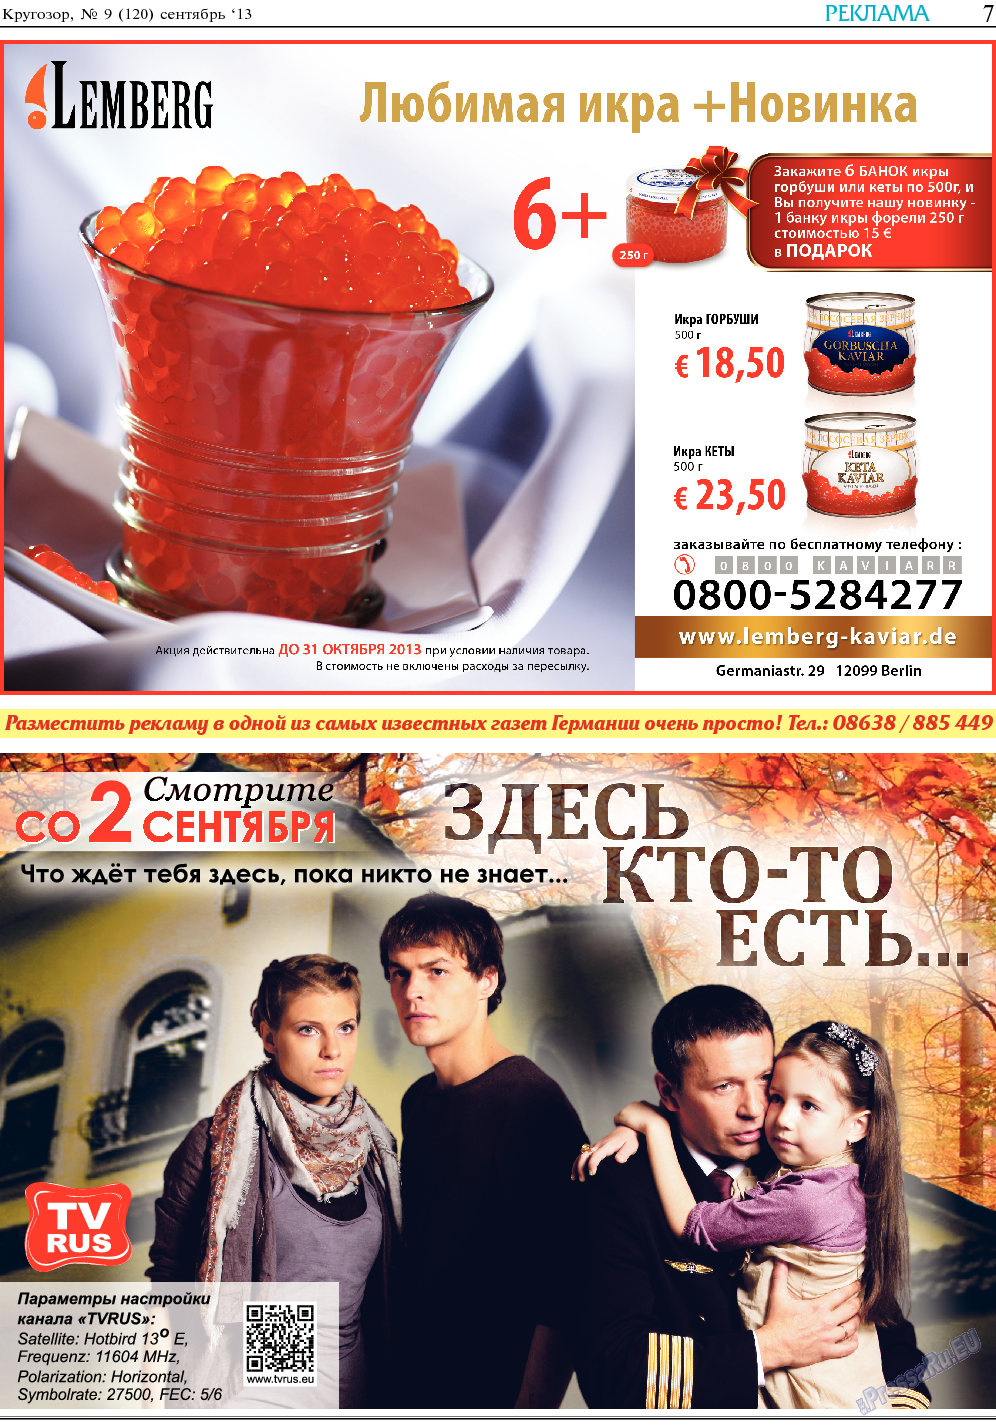 Кругозор, газета. 2013 №9 стр.7